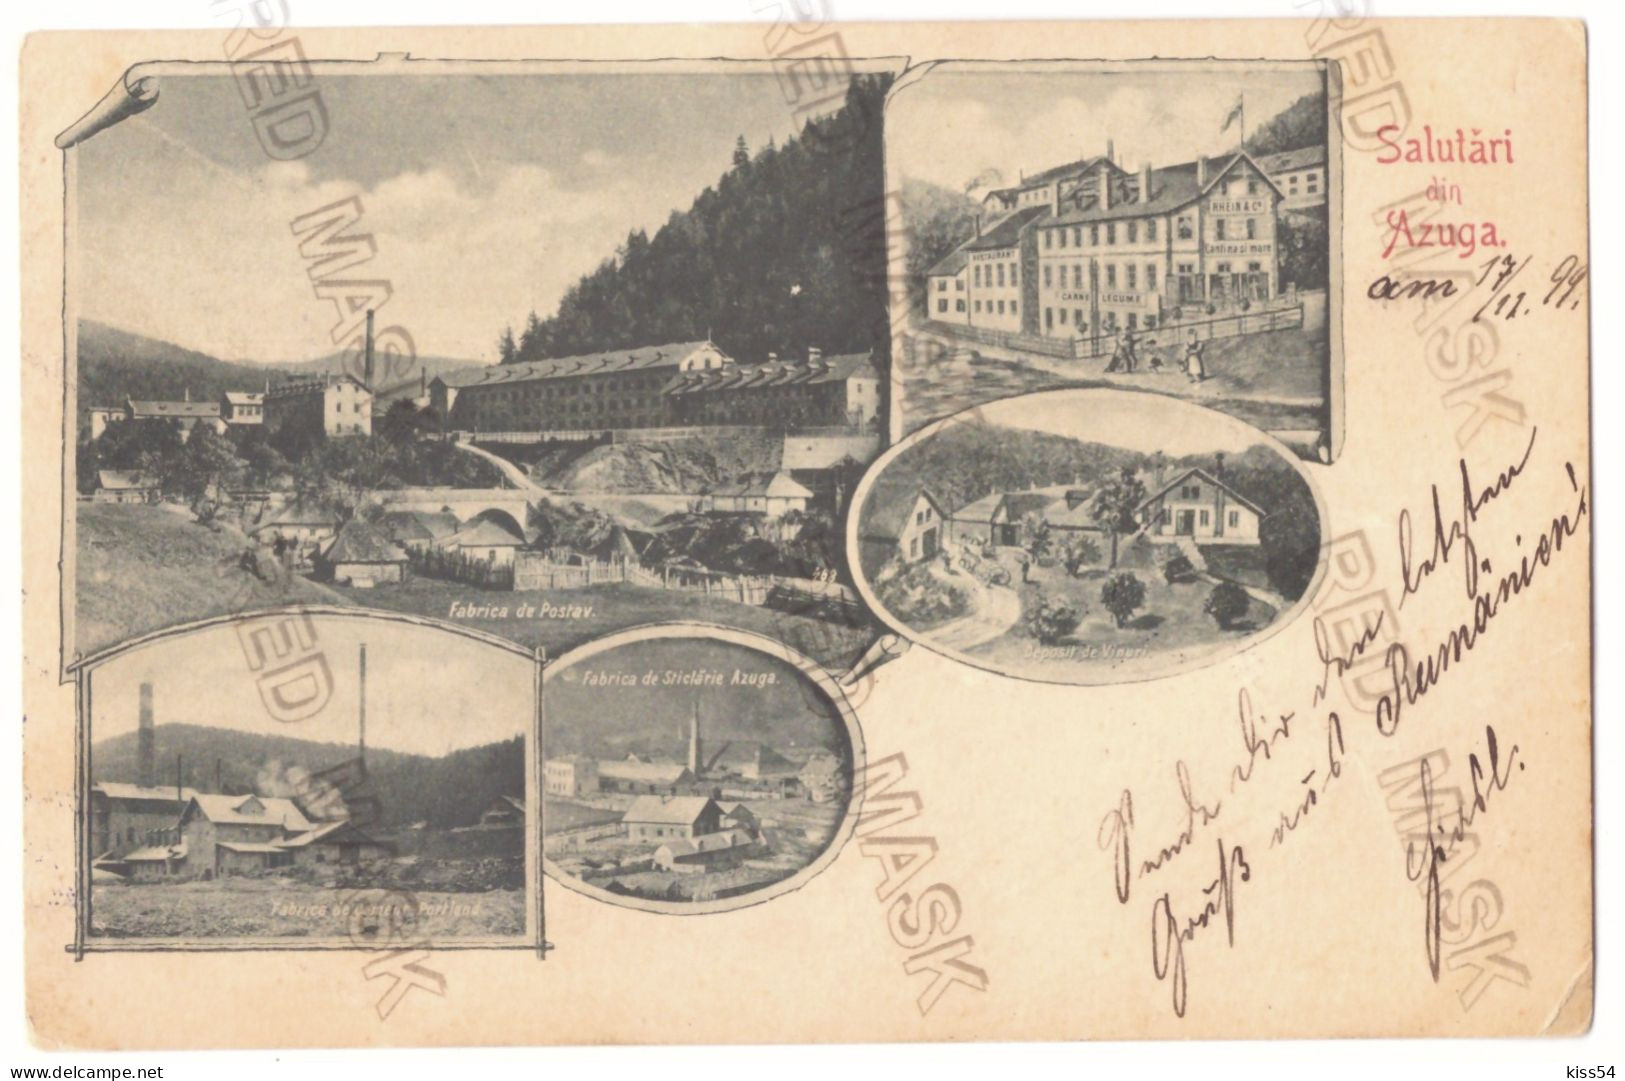 RO - 25401 AZUGA, Prahova, Litho, Romania - Old Postcard - Used - 1899 - Romania